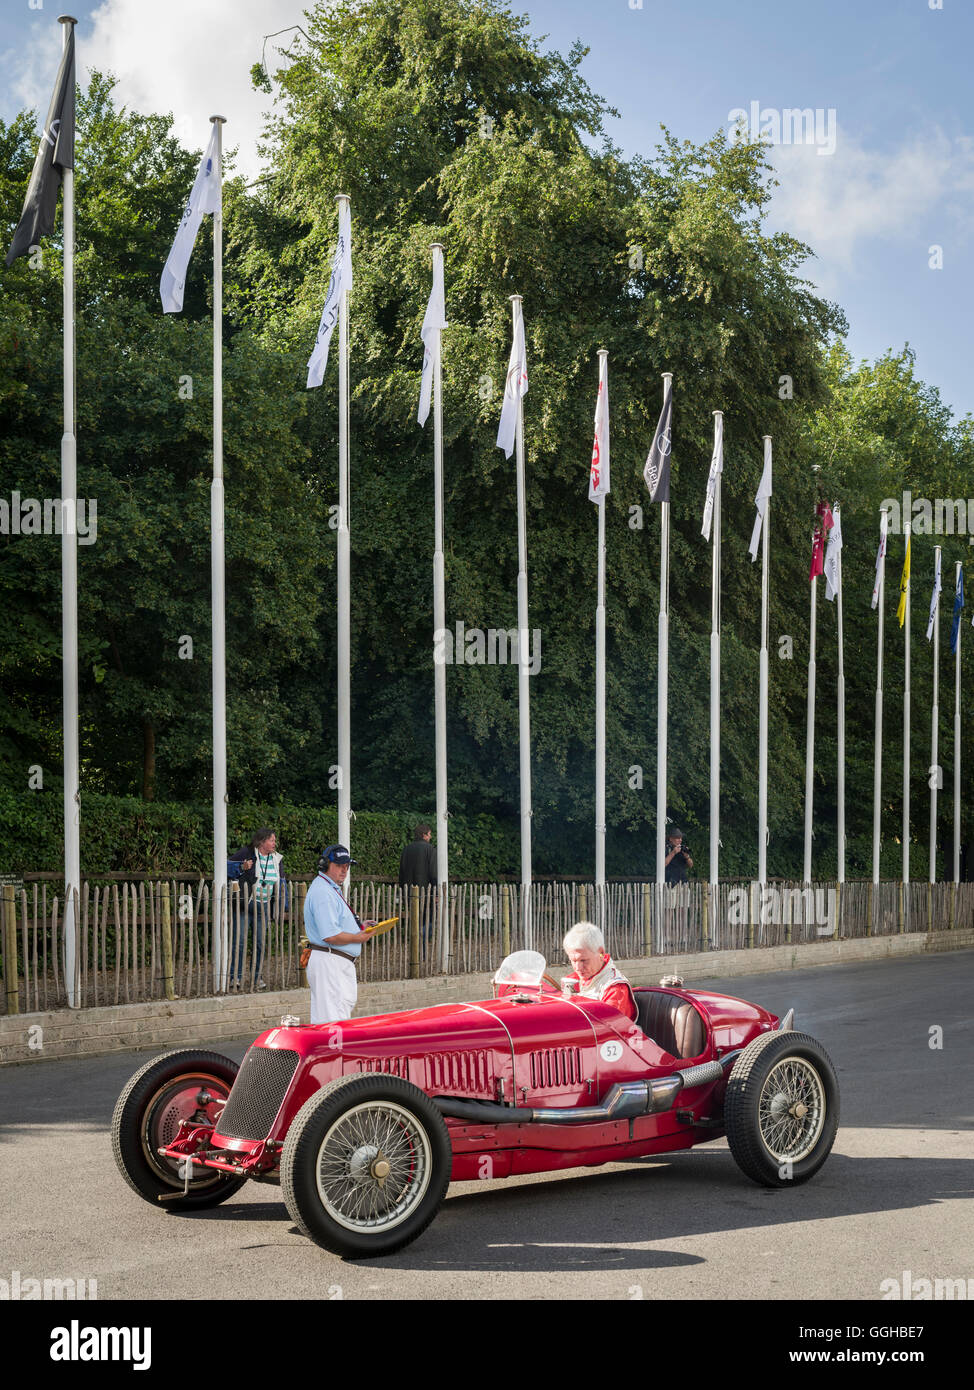 1932 Maserati 8C-3000, Goodwood Festival della velocità 2014, racing, auto racing, classic car, Chichester, Sussex, Regno Unito, GRE Foto Stock